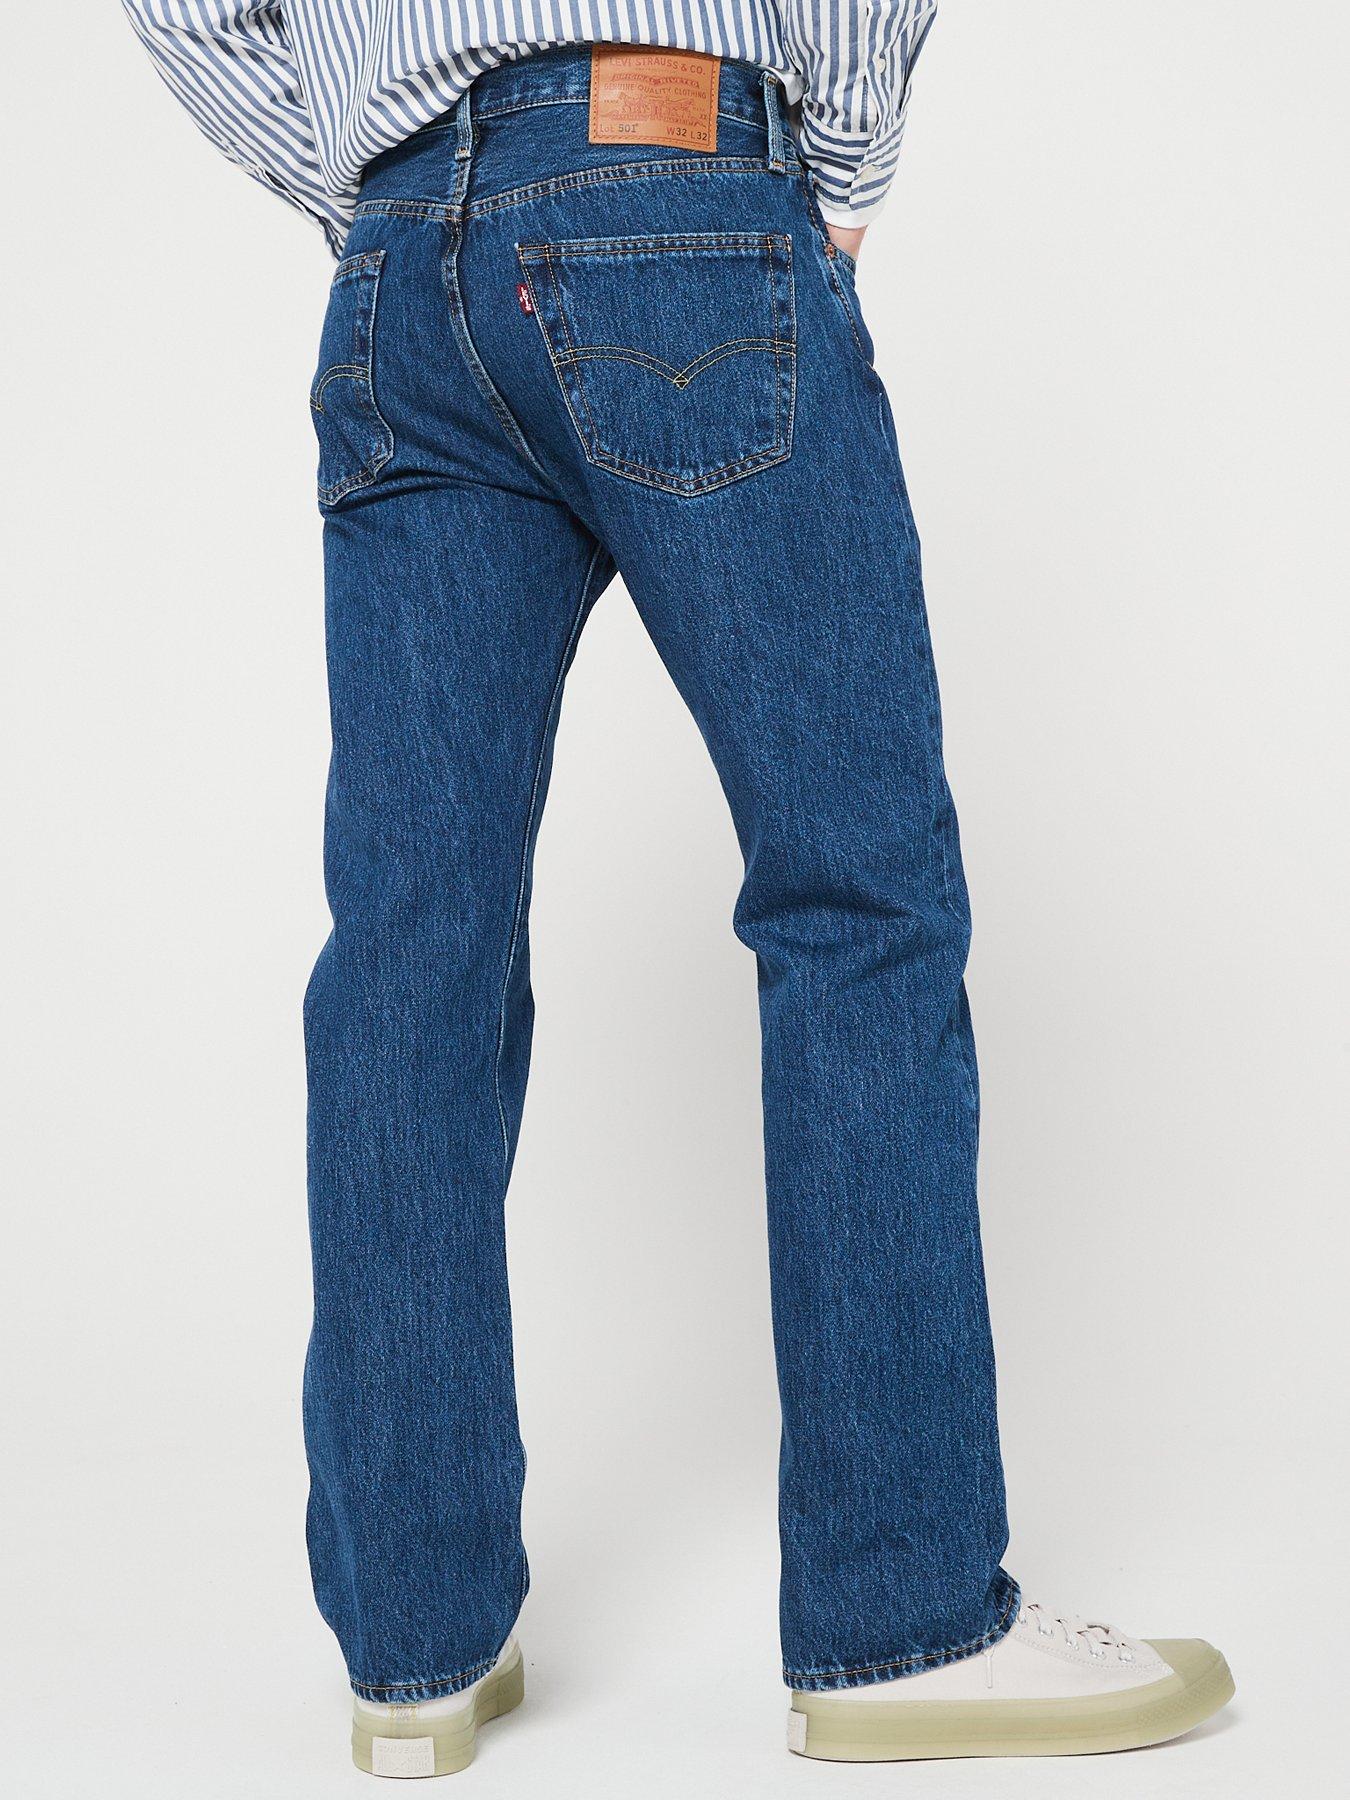 501 original fit jeans